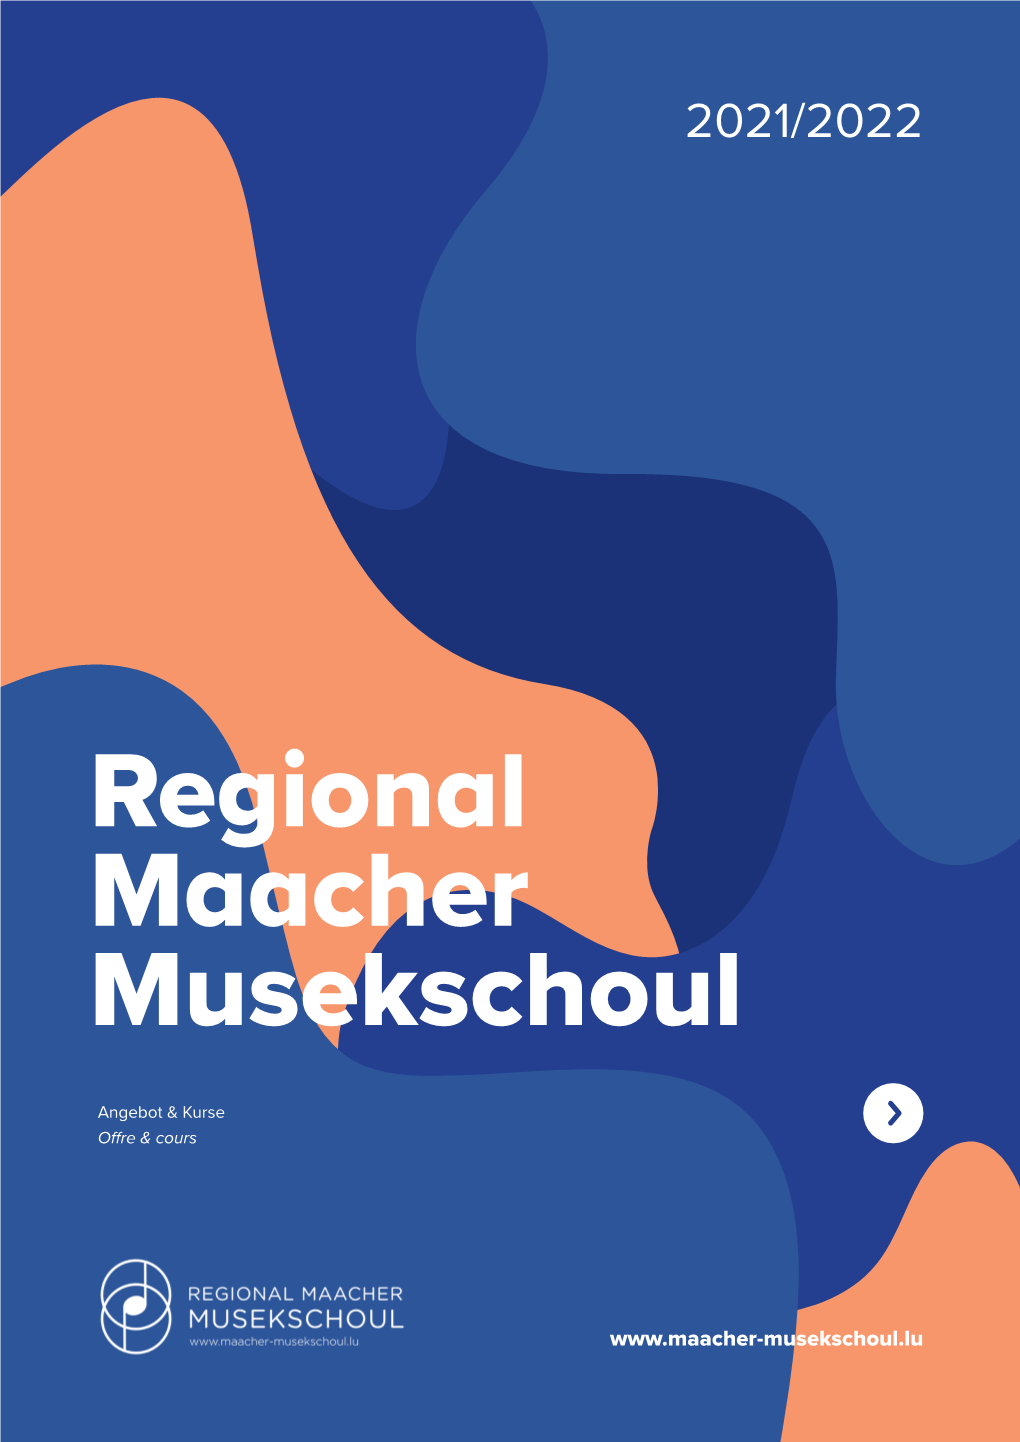 Regional Maacher Musekschoul